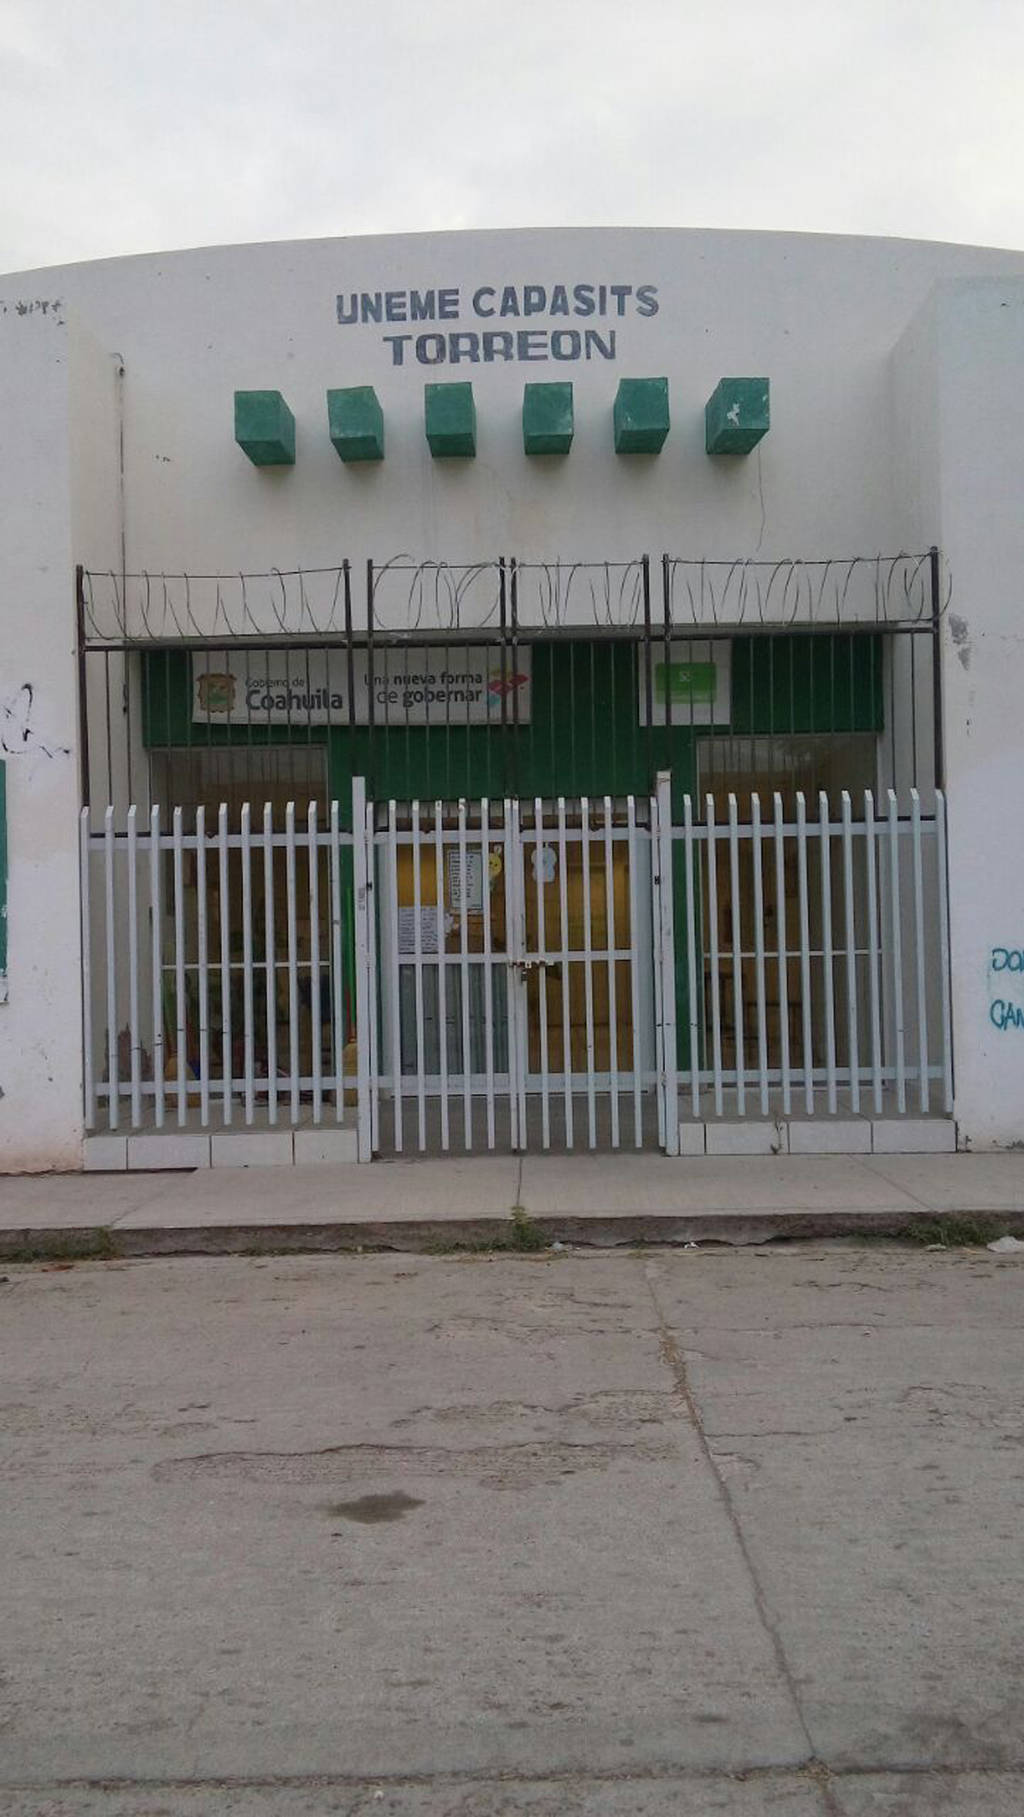 Seguridad. Además del área de farmacia, se reforzó la entrada al Capasits en Torreón tras el atraco que sufrieron en julio. (ARCHIVO)